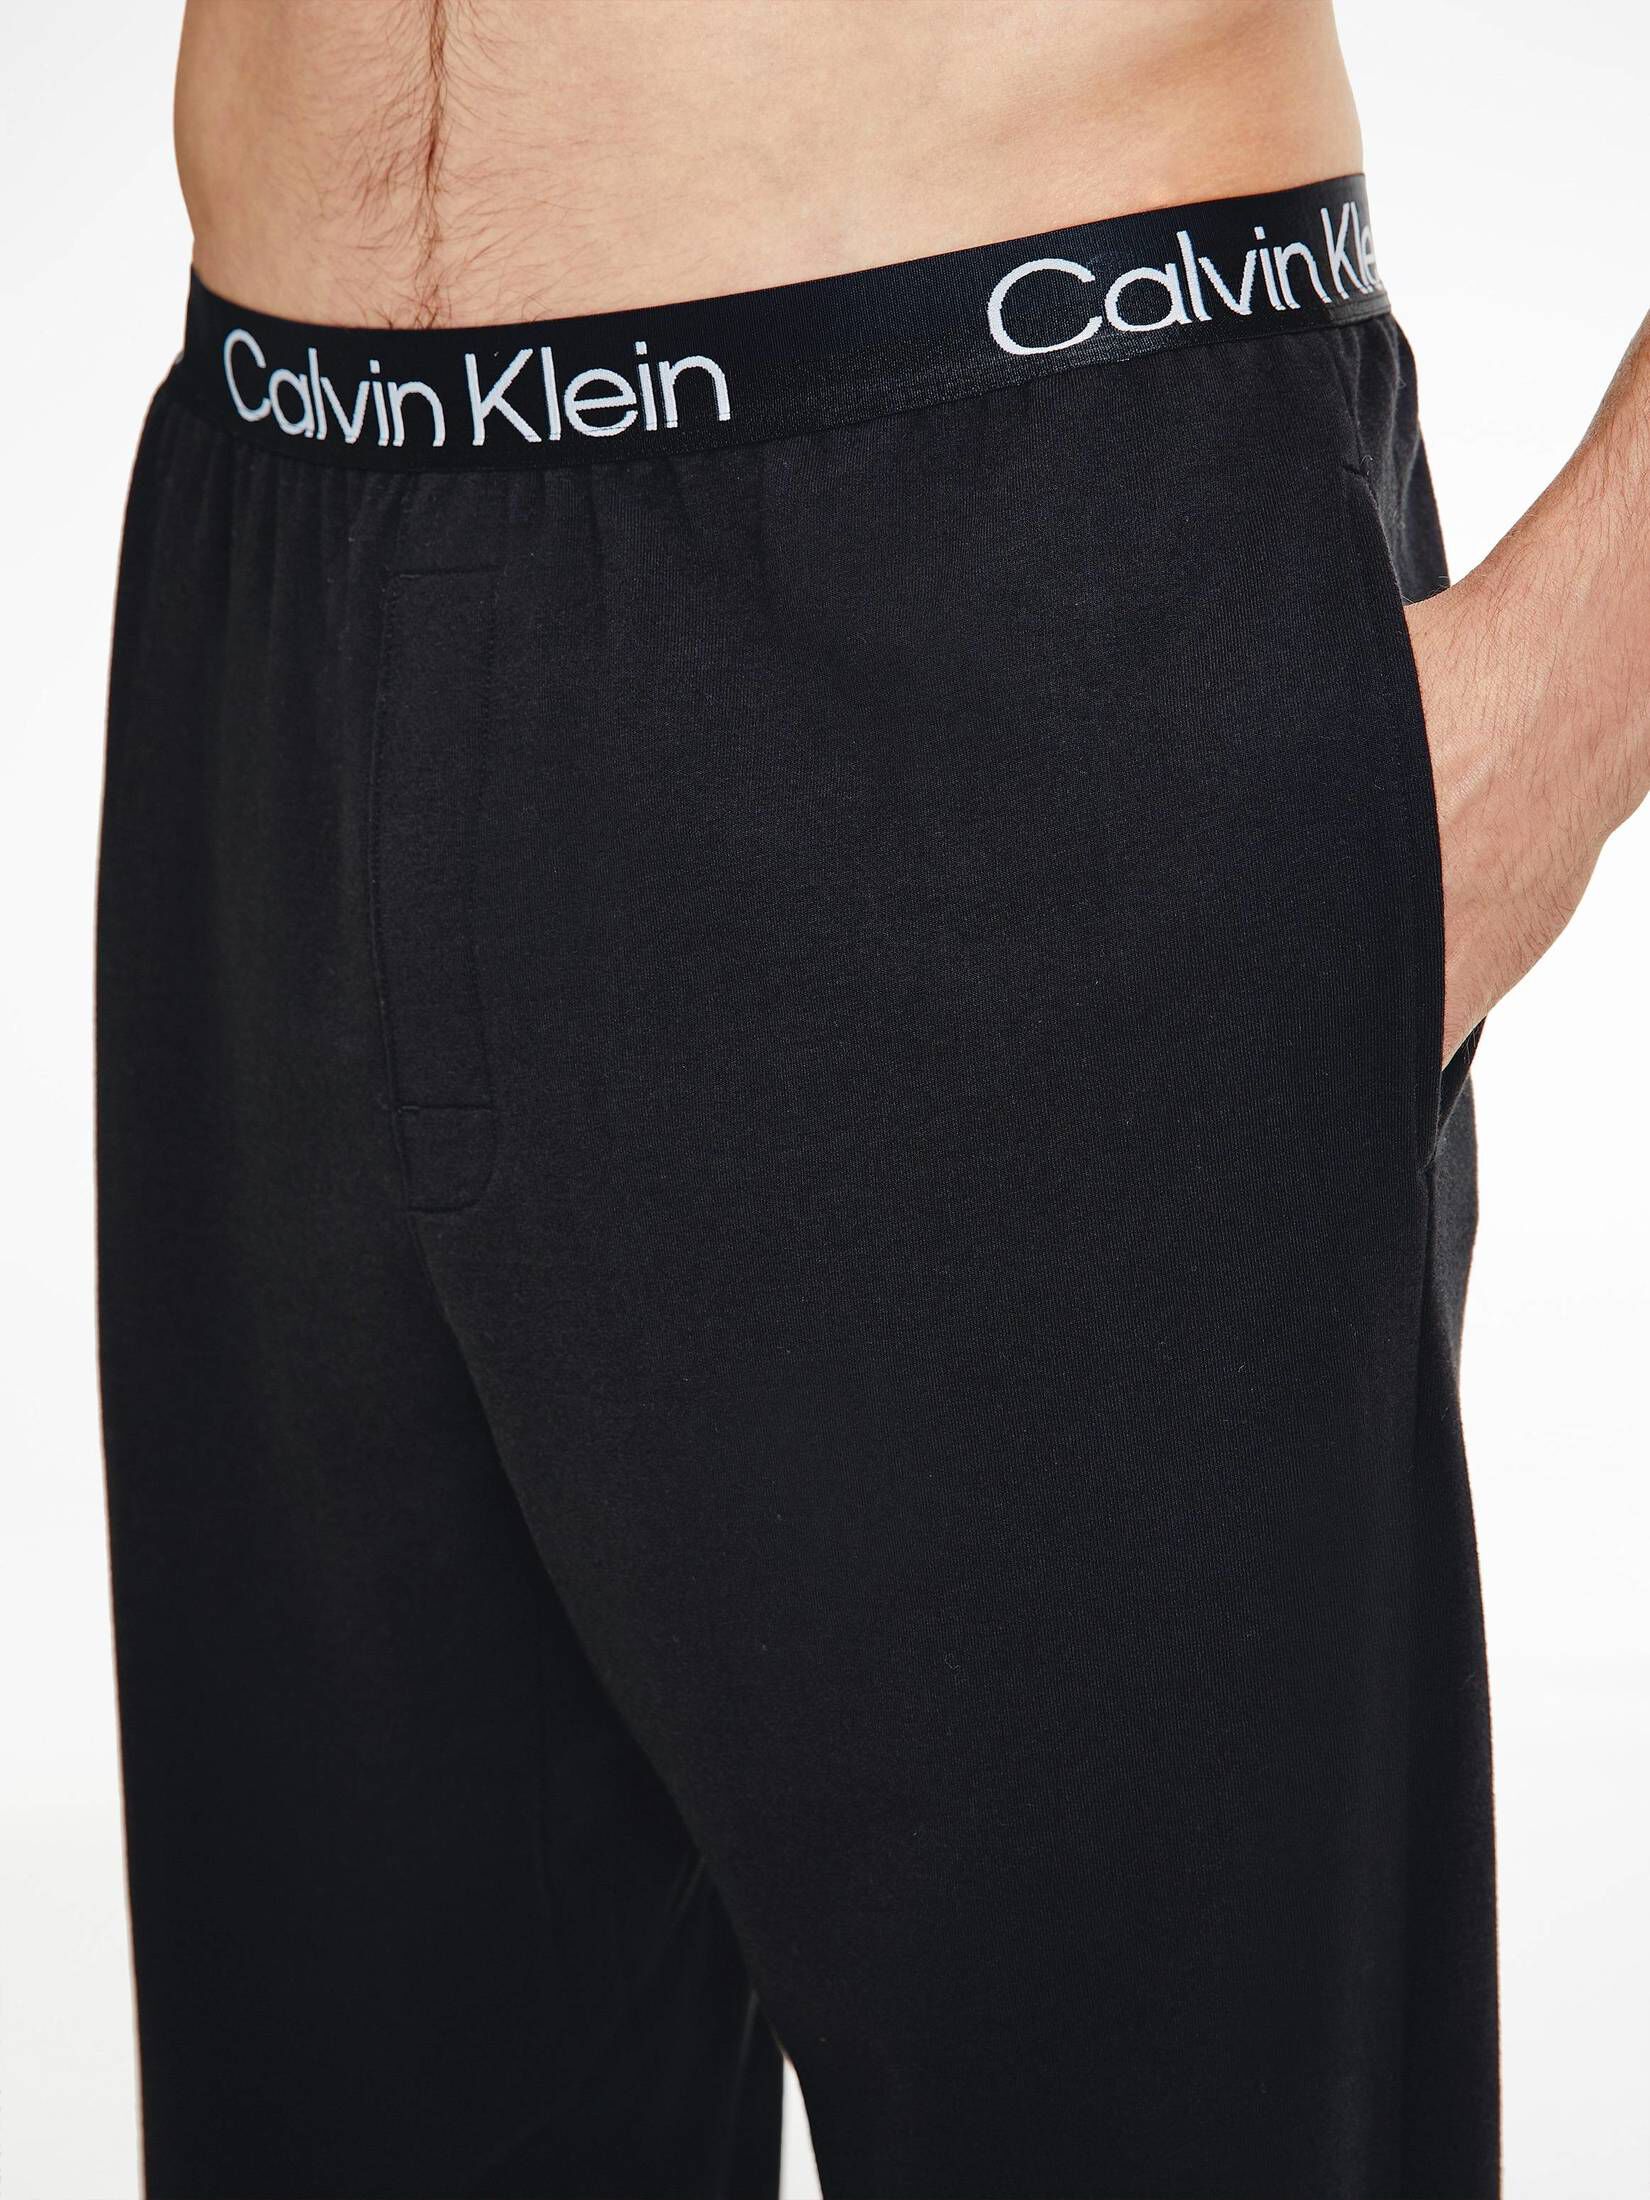 CALVIN KLEIN UNDERWEAR Herren Loungewear-Hose kaufen | engelhorn